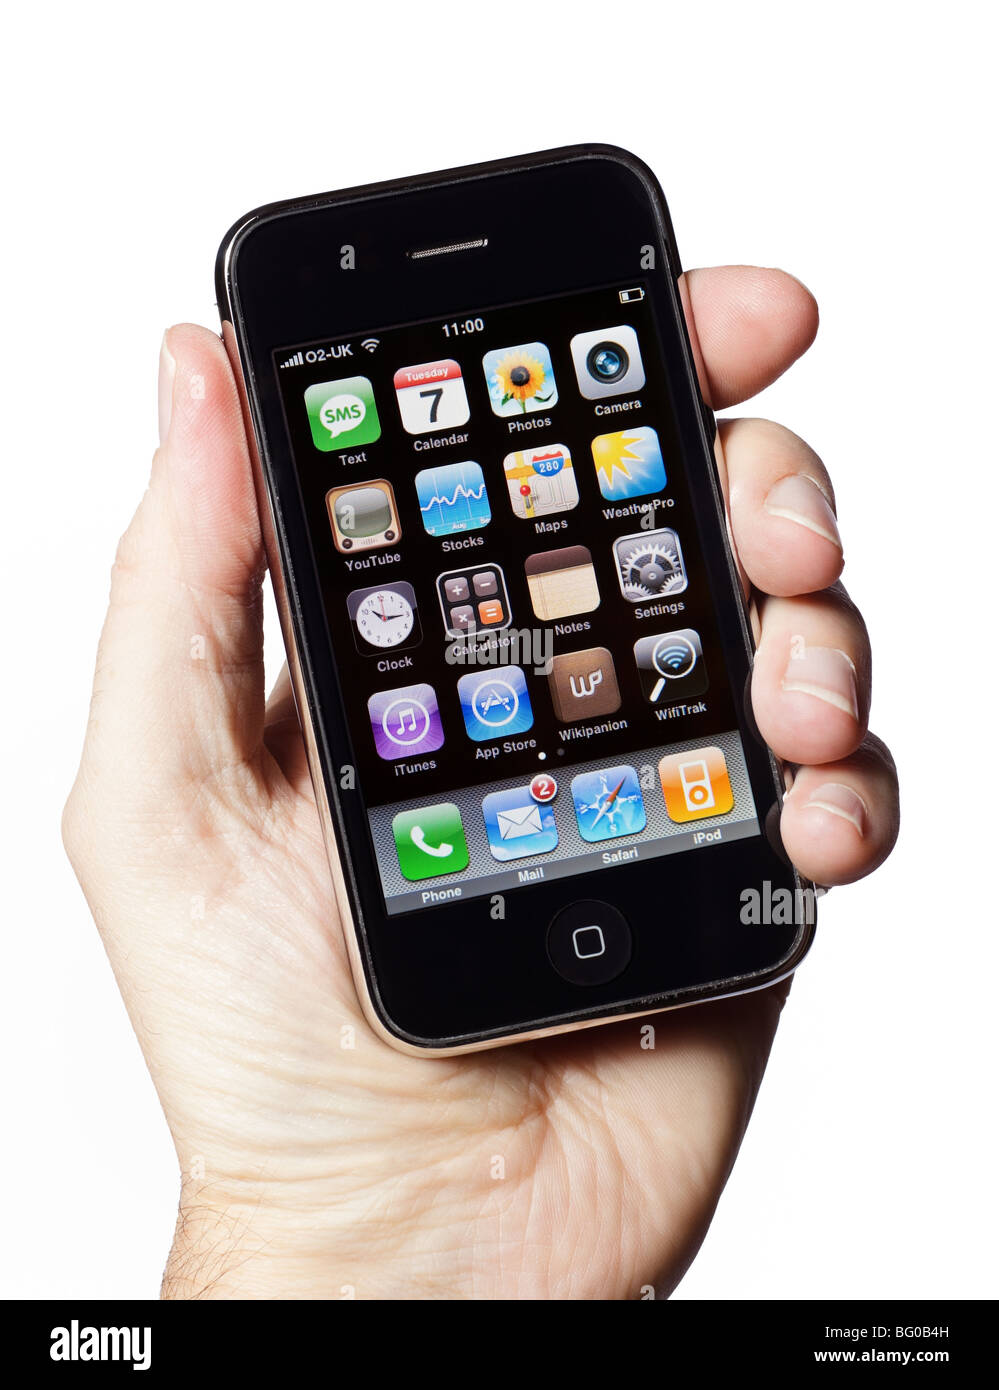 iPhone: Điện thoại iPhone của Apple đã trở thành một biểu tượng trong thế giới công nghệ. Với thiết kế đẹp mắt, tích hợp nhiều tính năng tiên tiến, iPhone là một lựa chọn hoàn hảo cho những người sành công nghệ. Hãy cùng khám phá hình ảnh về chiếc điện thoại này để hiểu thêm về sự đẳng cấp và tiện ích mà iPhone mang lại.